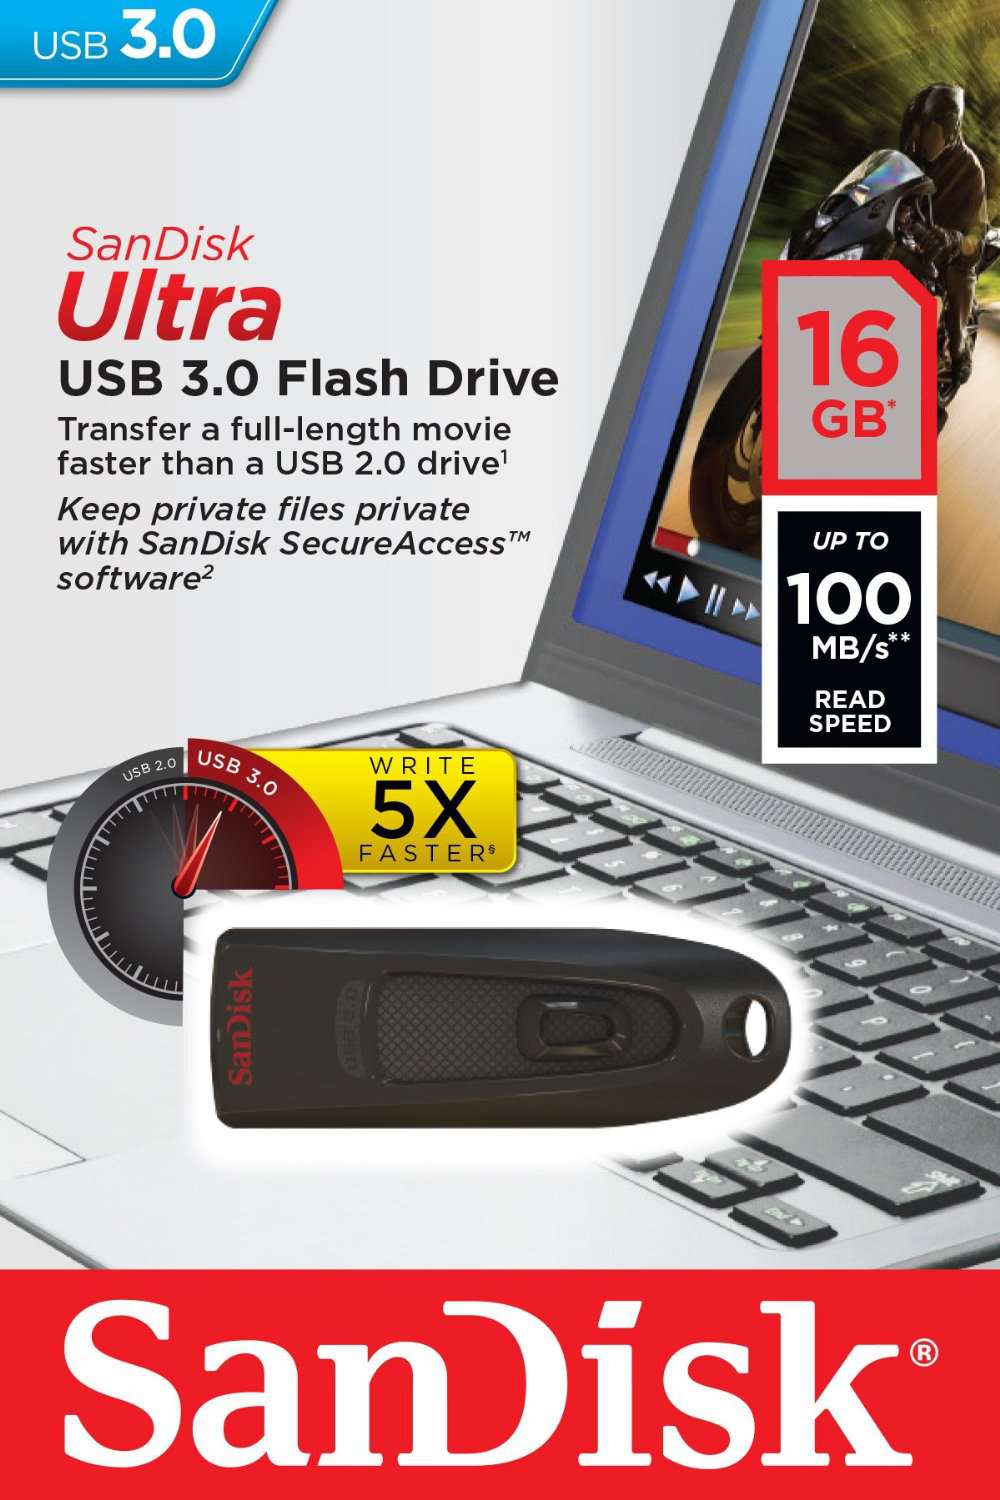 USB 3.0 Sandisk 16G Chính Hãng - 1